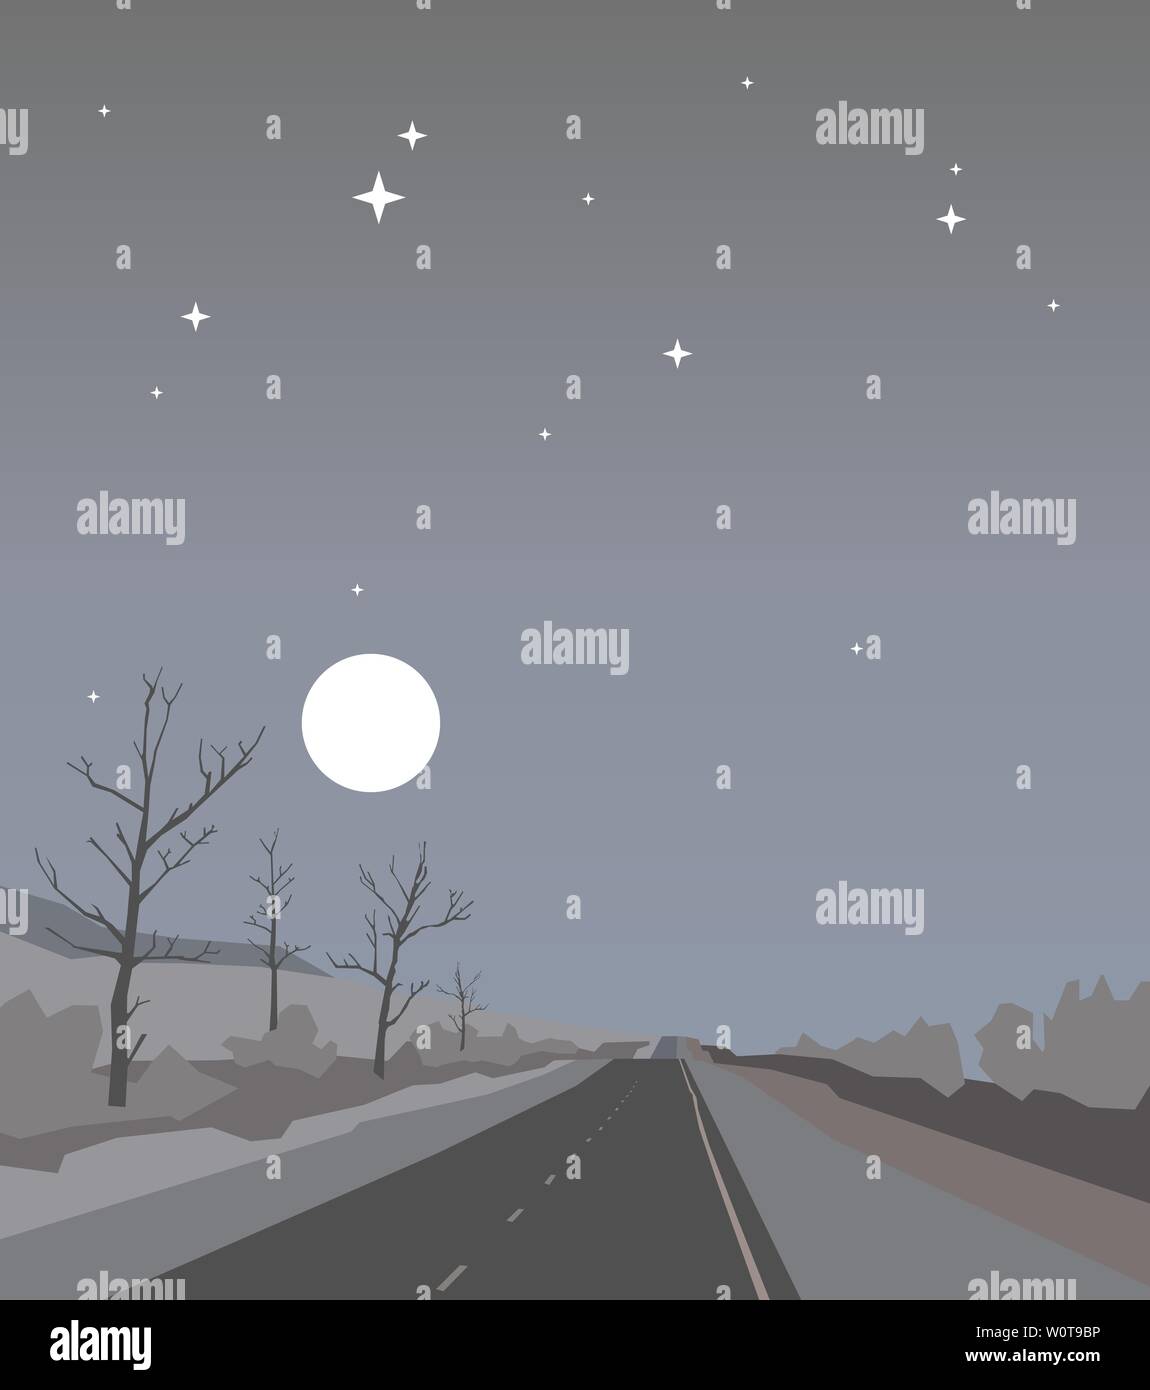 Fahren Sie auf den Berg in der Nacht Straße bei bewölktem Himmel mit Sternen und Vollmond. Am späten Abend Landschaft in minimalistischem Stil Stockfoto